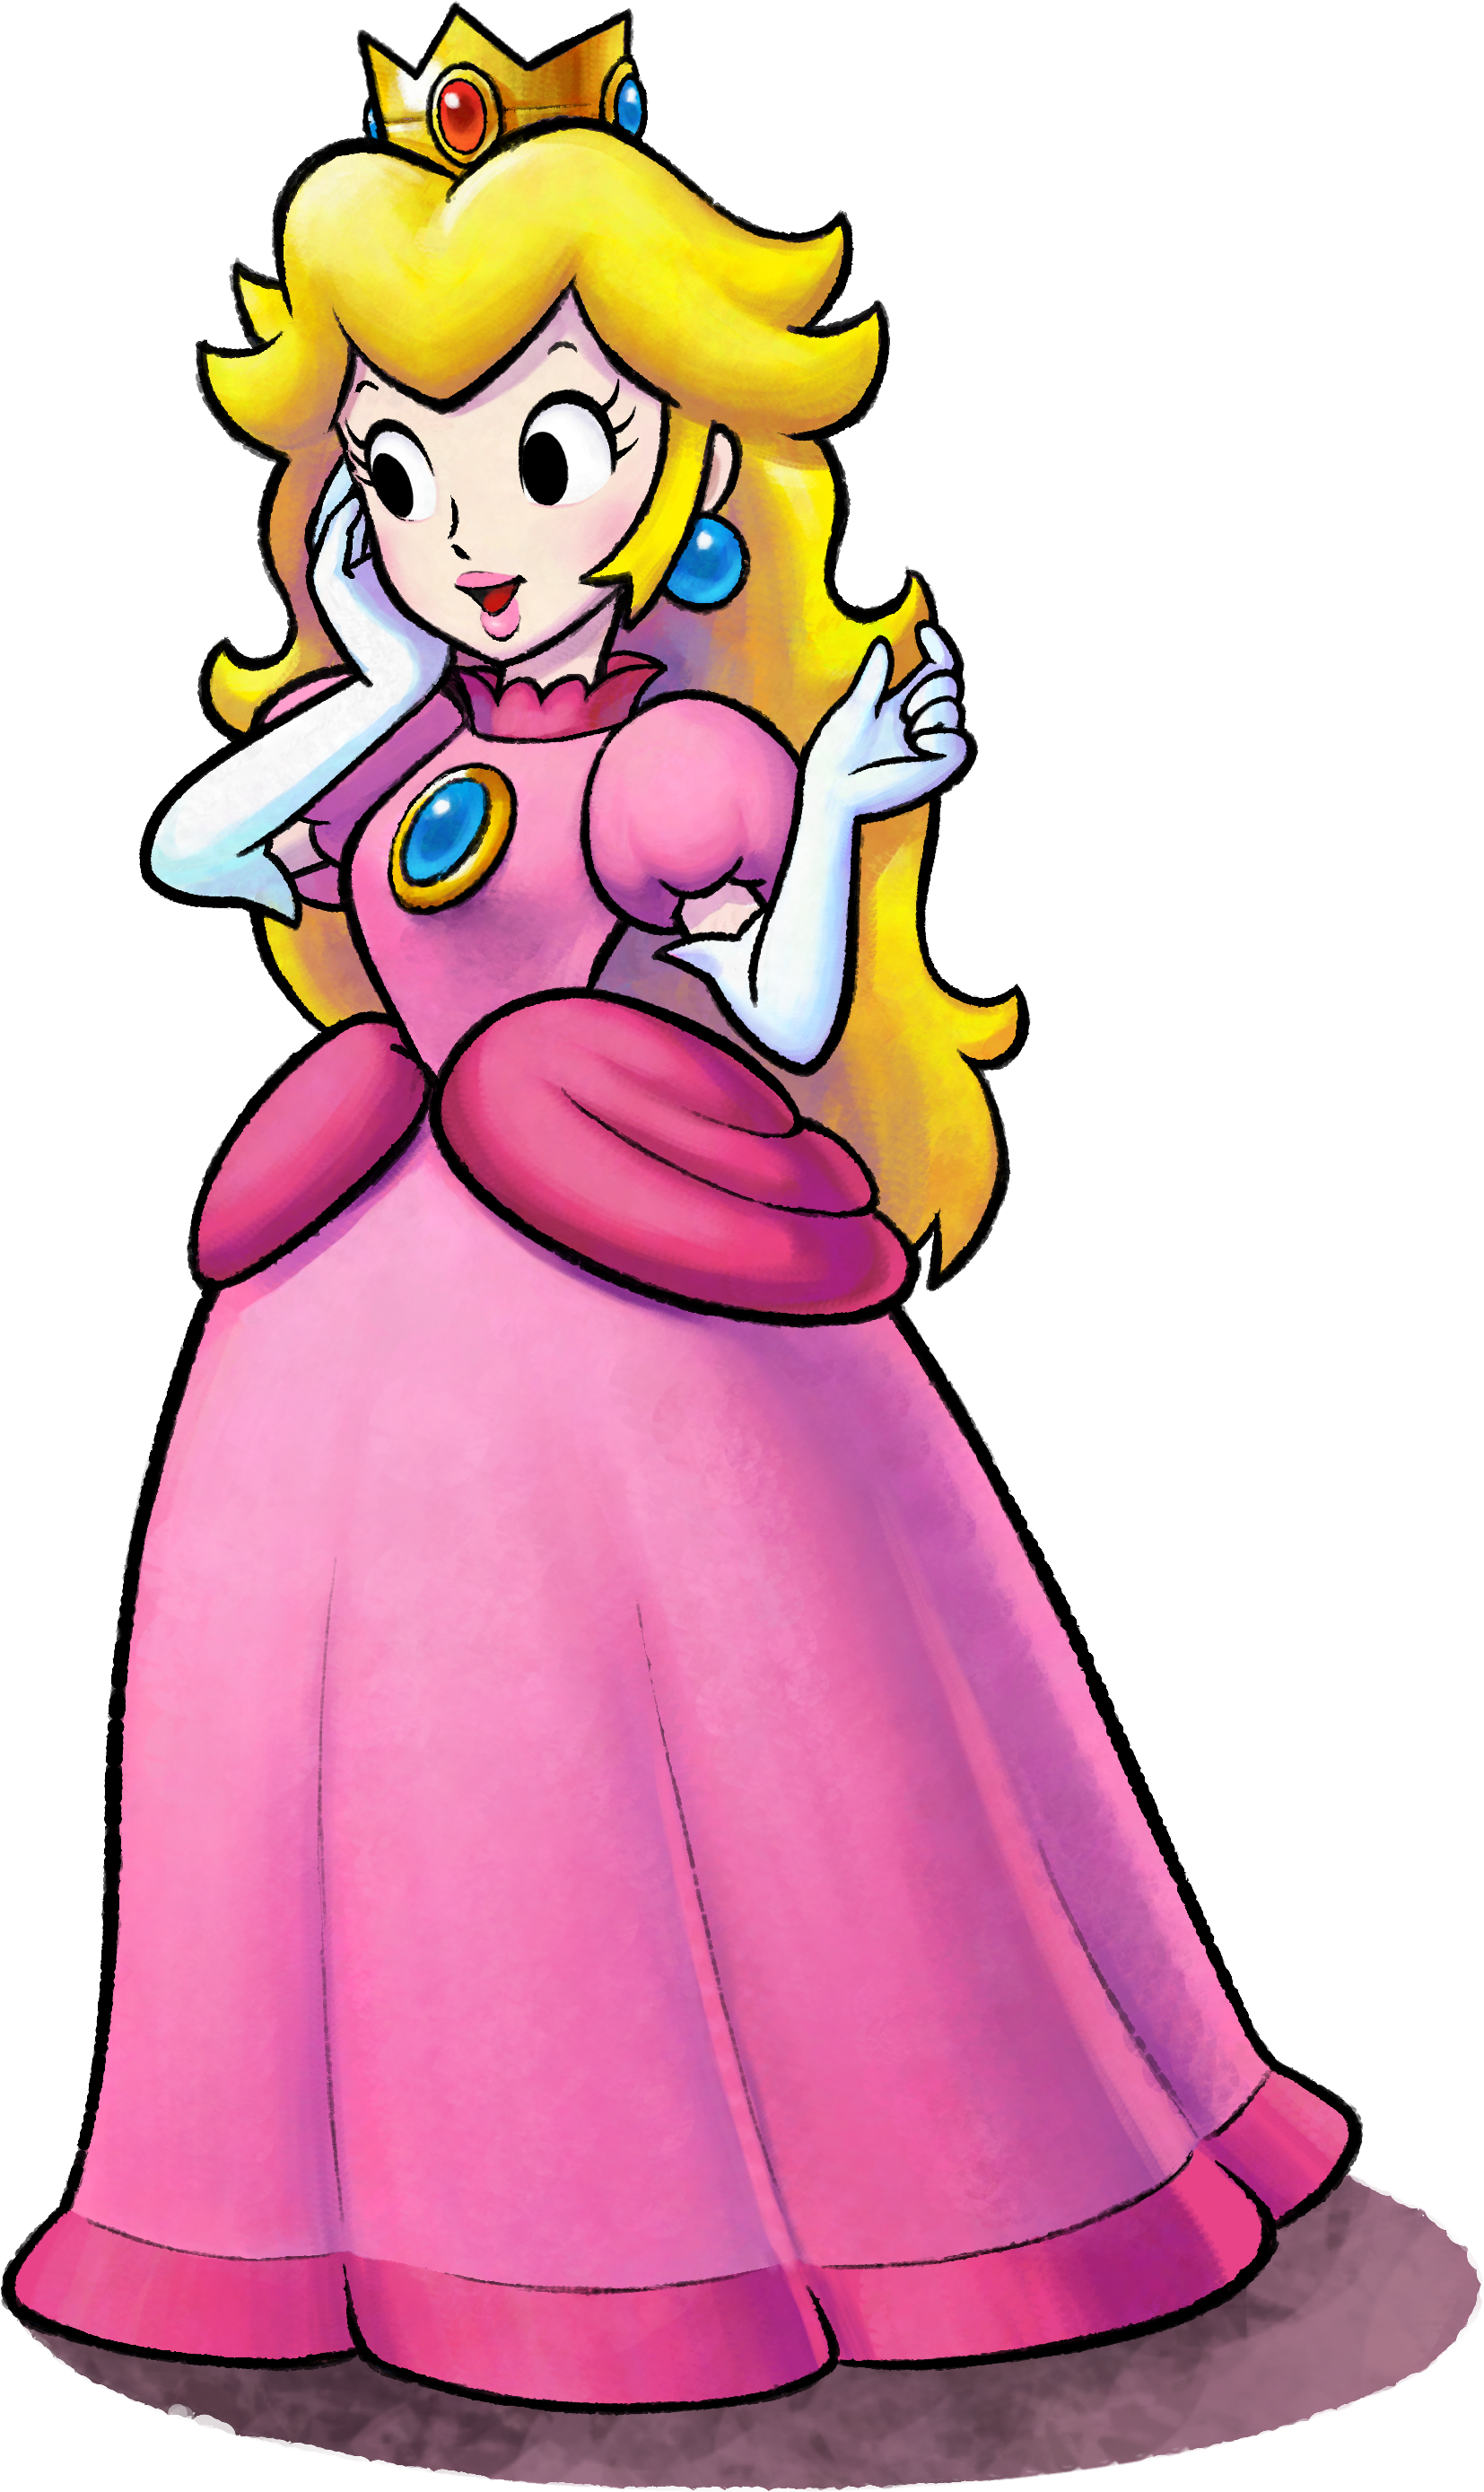 Princess - Princess Peach Mario And Luigi (1654x2777)